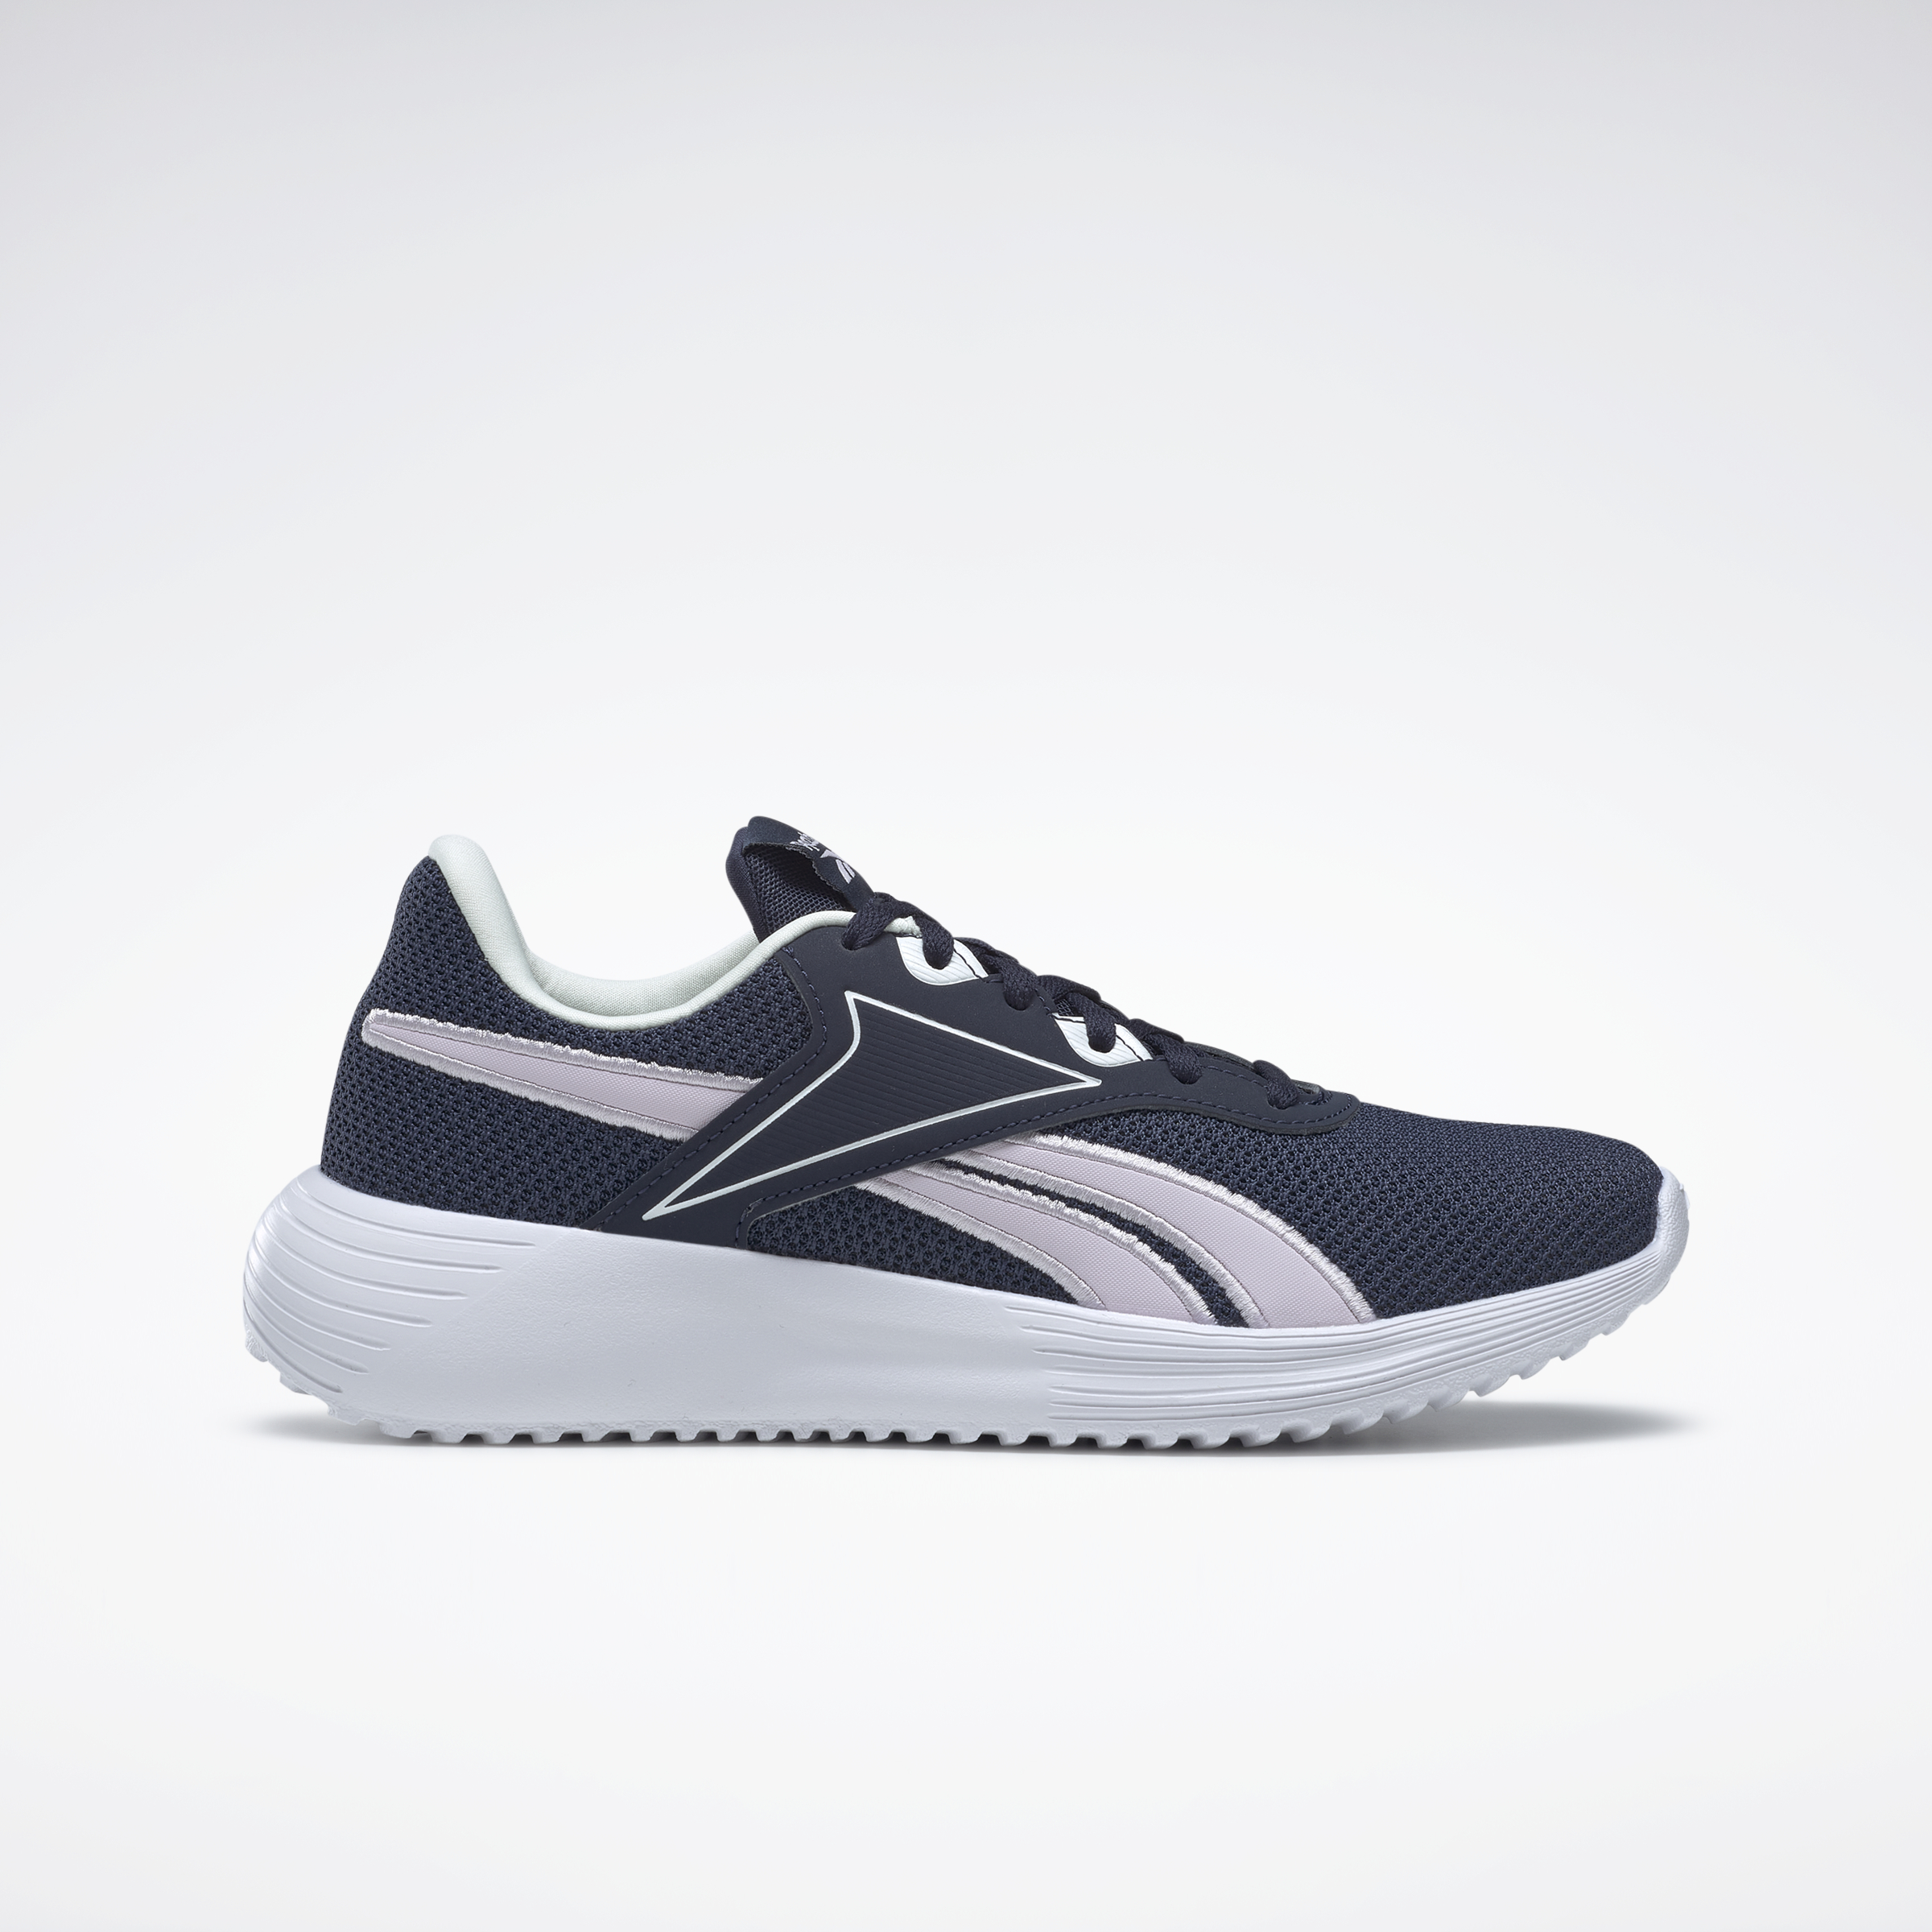 Reebok Women's Lite 3 Running Shoe (3 Colors) $22.49 + Free Shipping